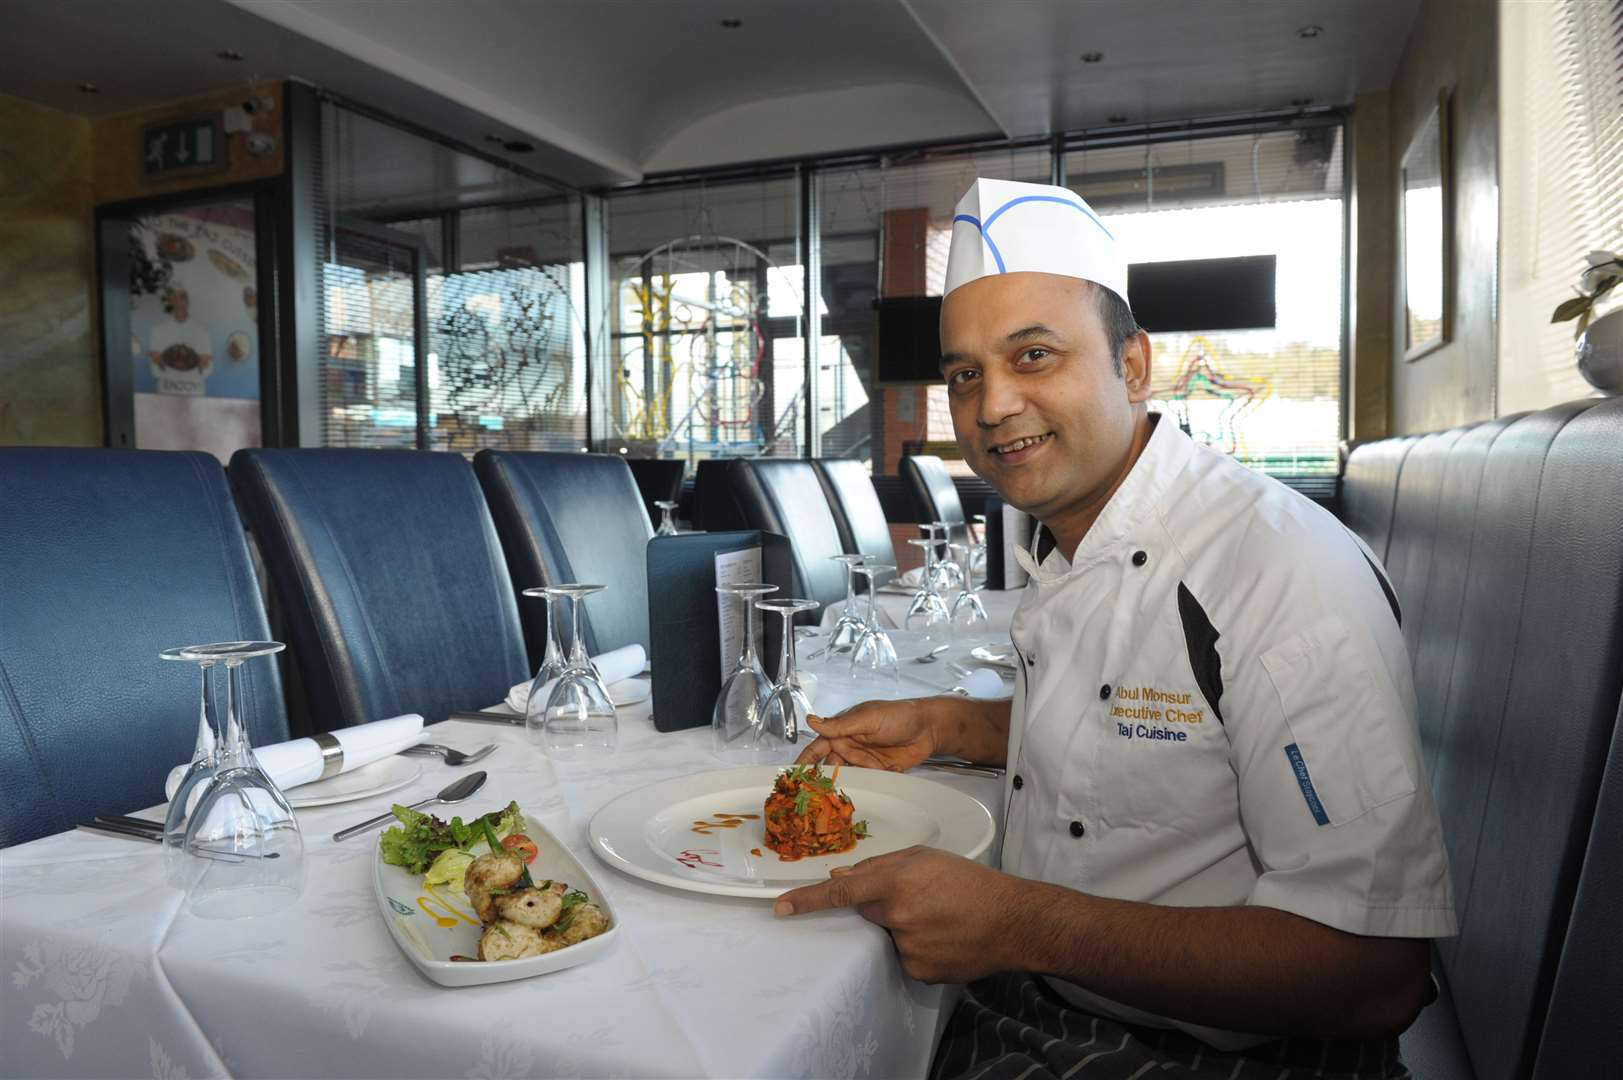 Taj Cuisine owner Abul Monsur. Picture: Steve Crispe